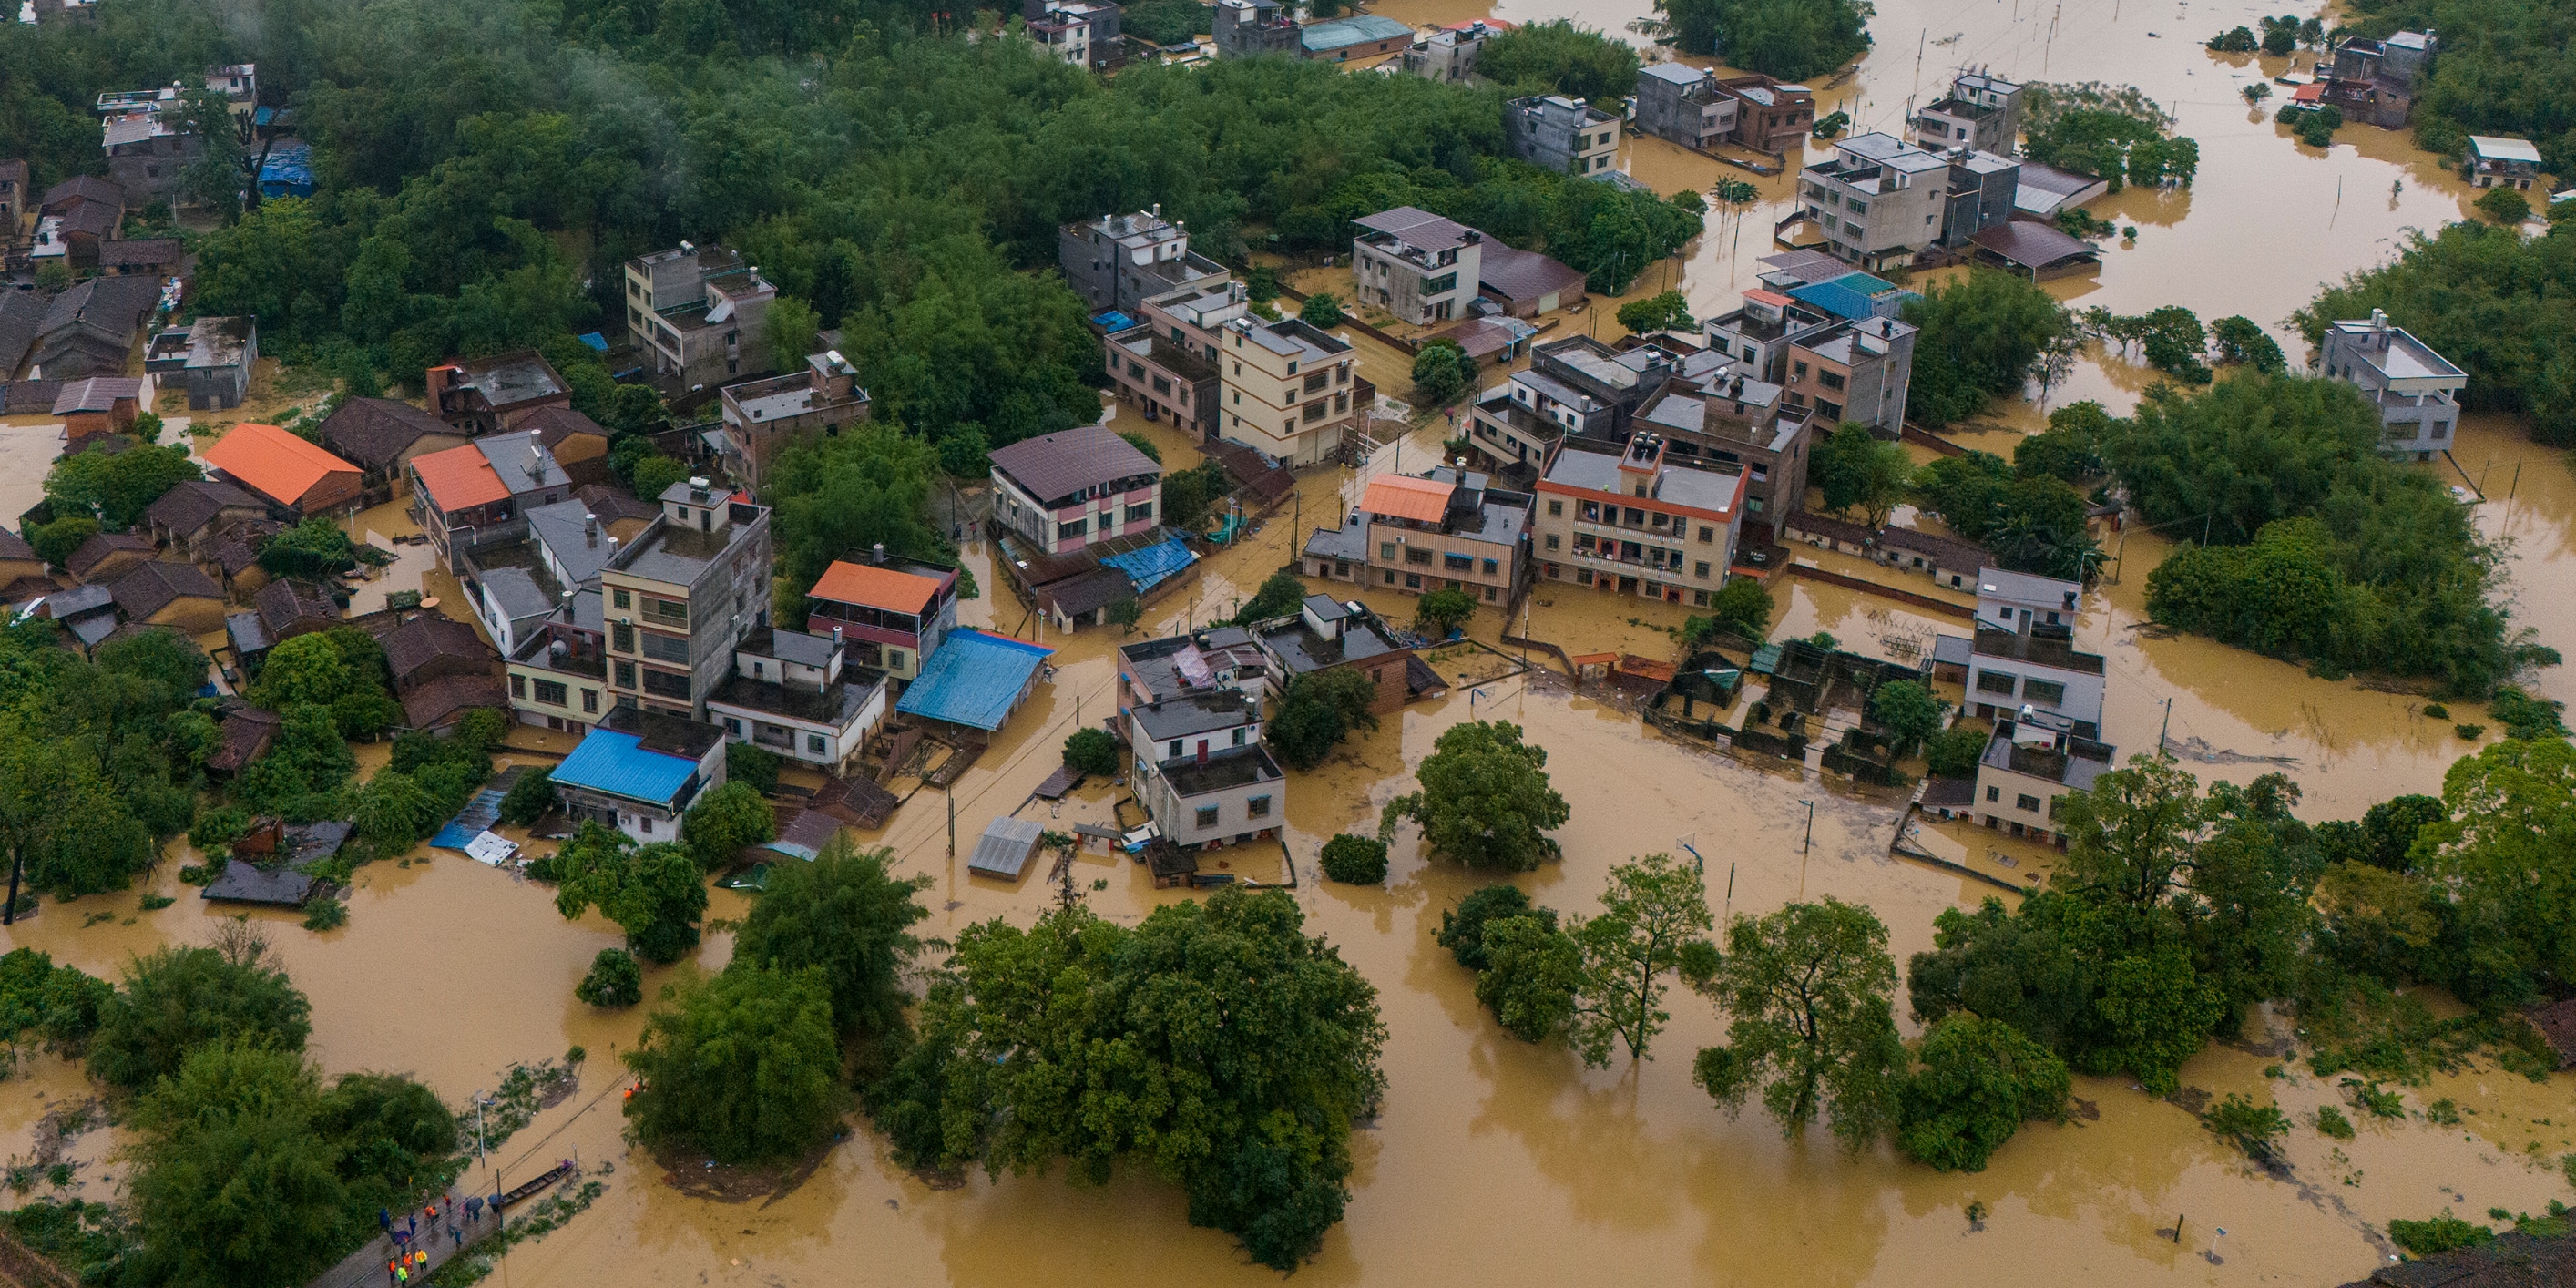 evakuierungen und vermisste - rekord-regenfälle verursachen chaos in südchina